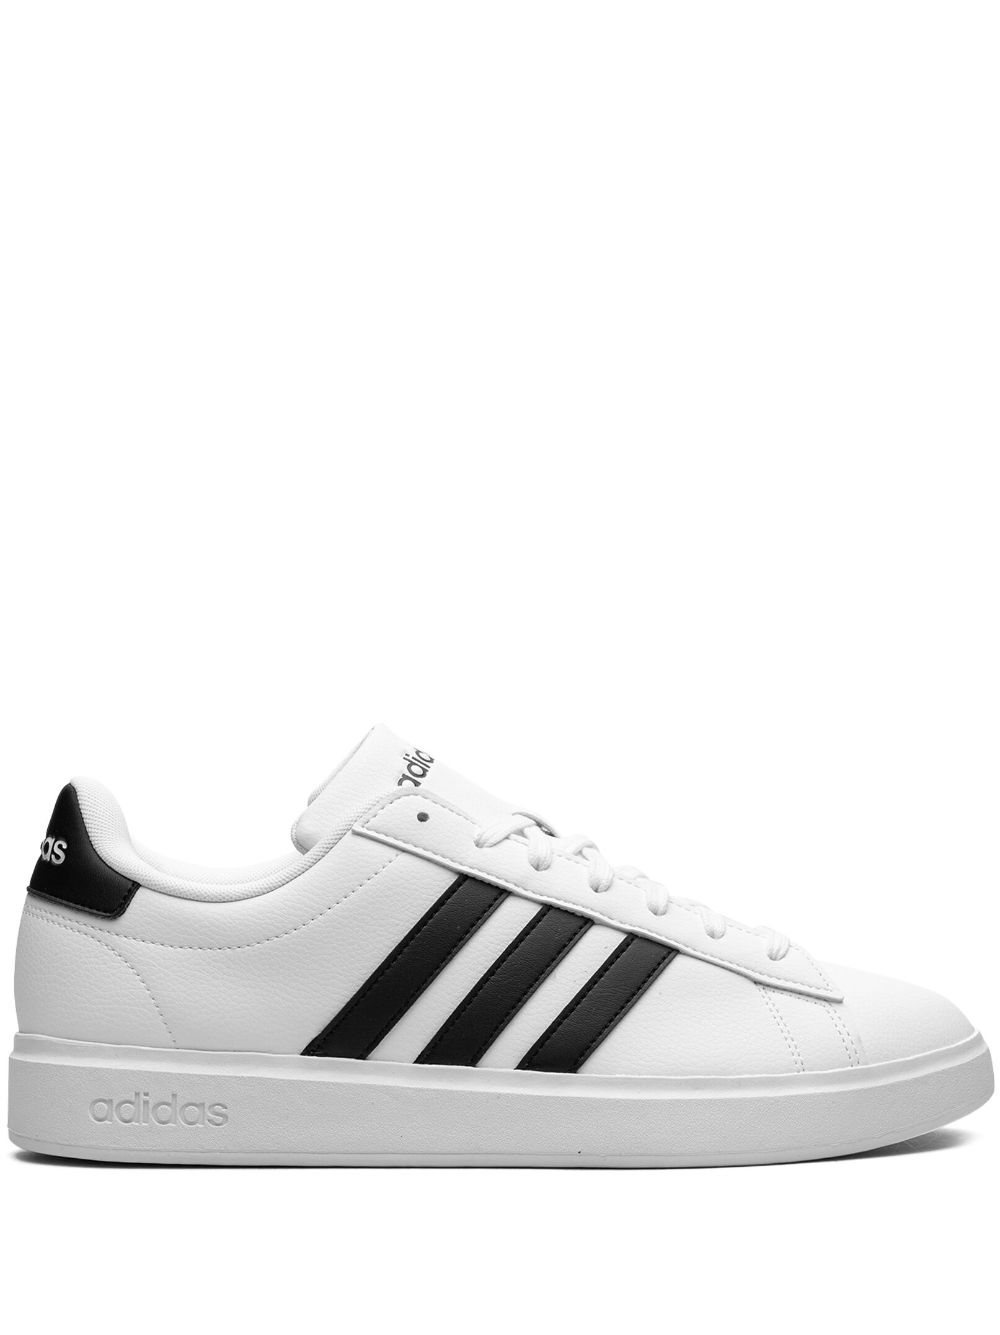 adidas Grand Court 2.0 White Black Sneakers - Weiß von adidas